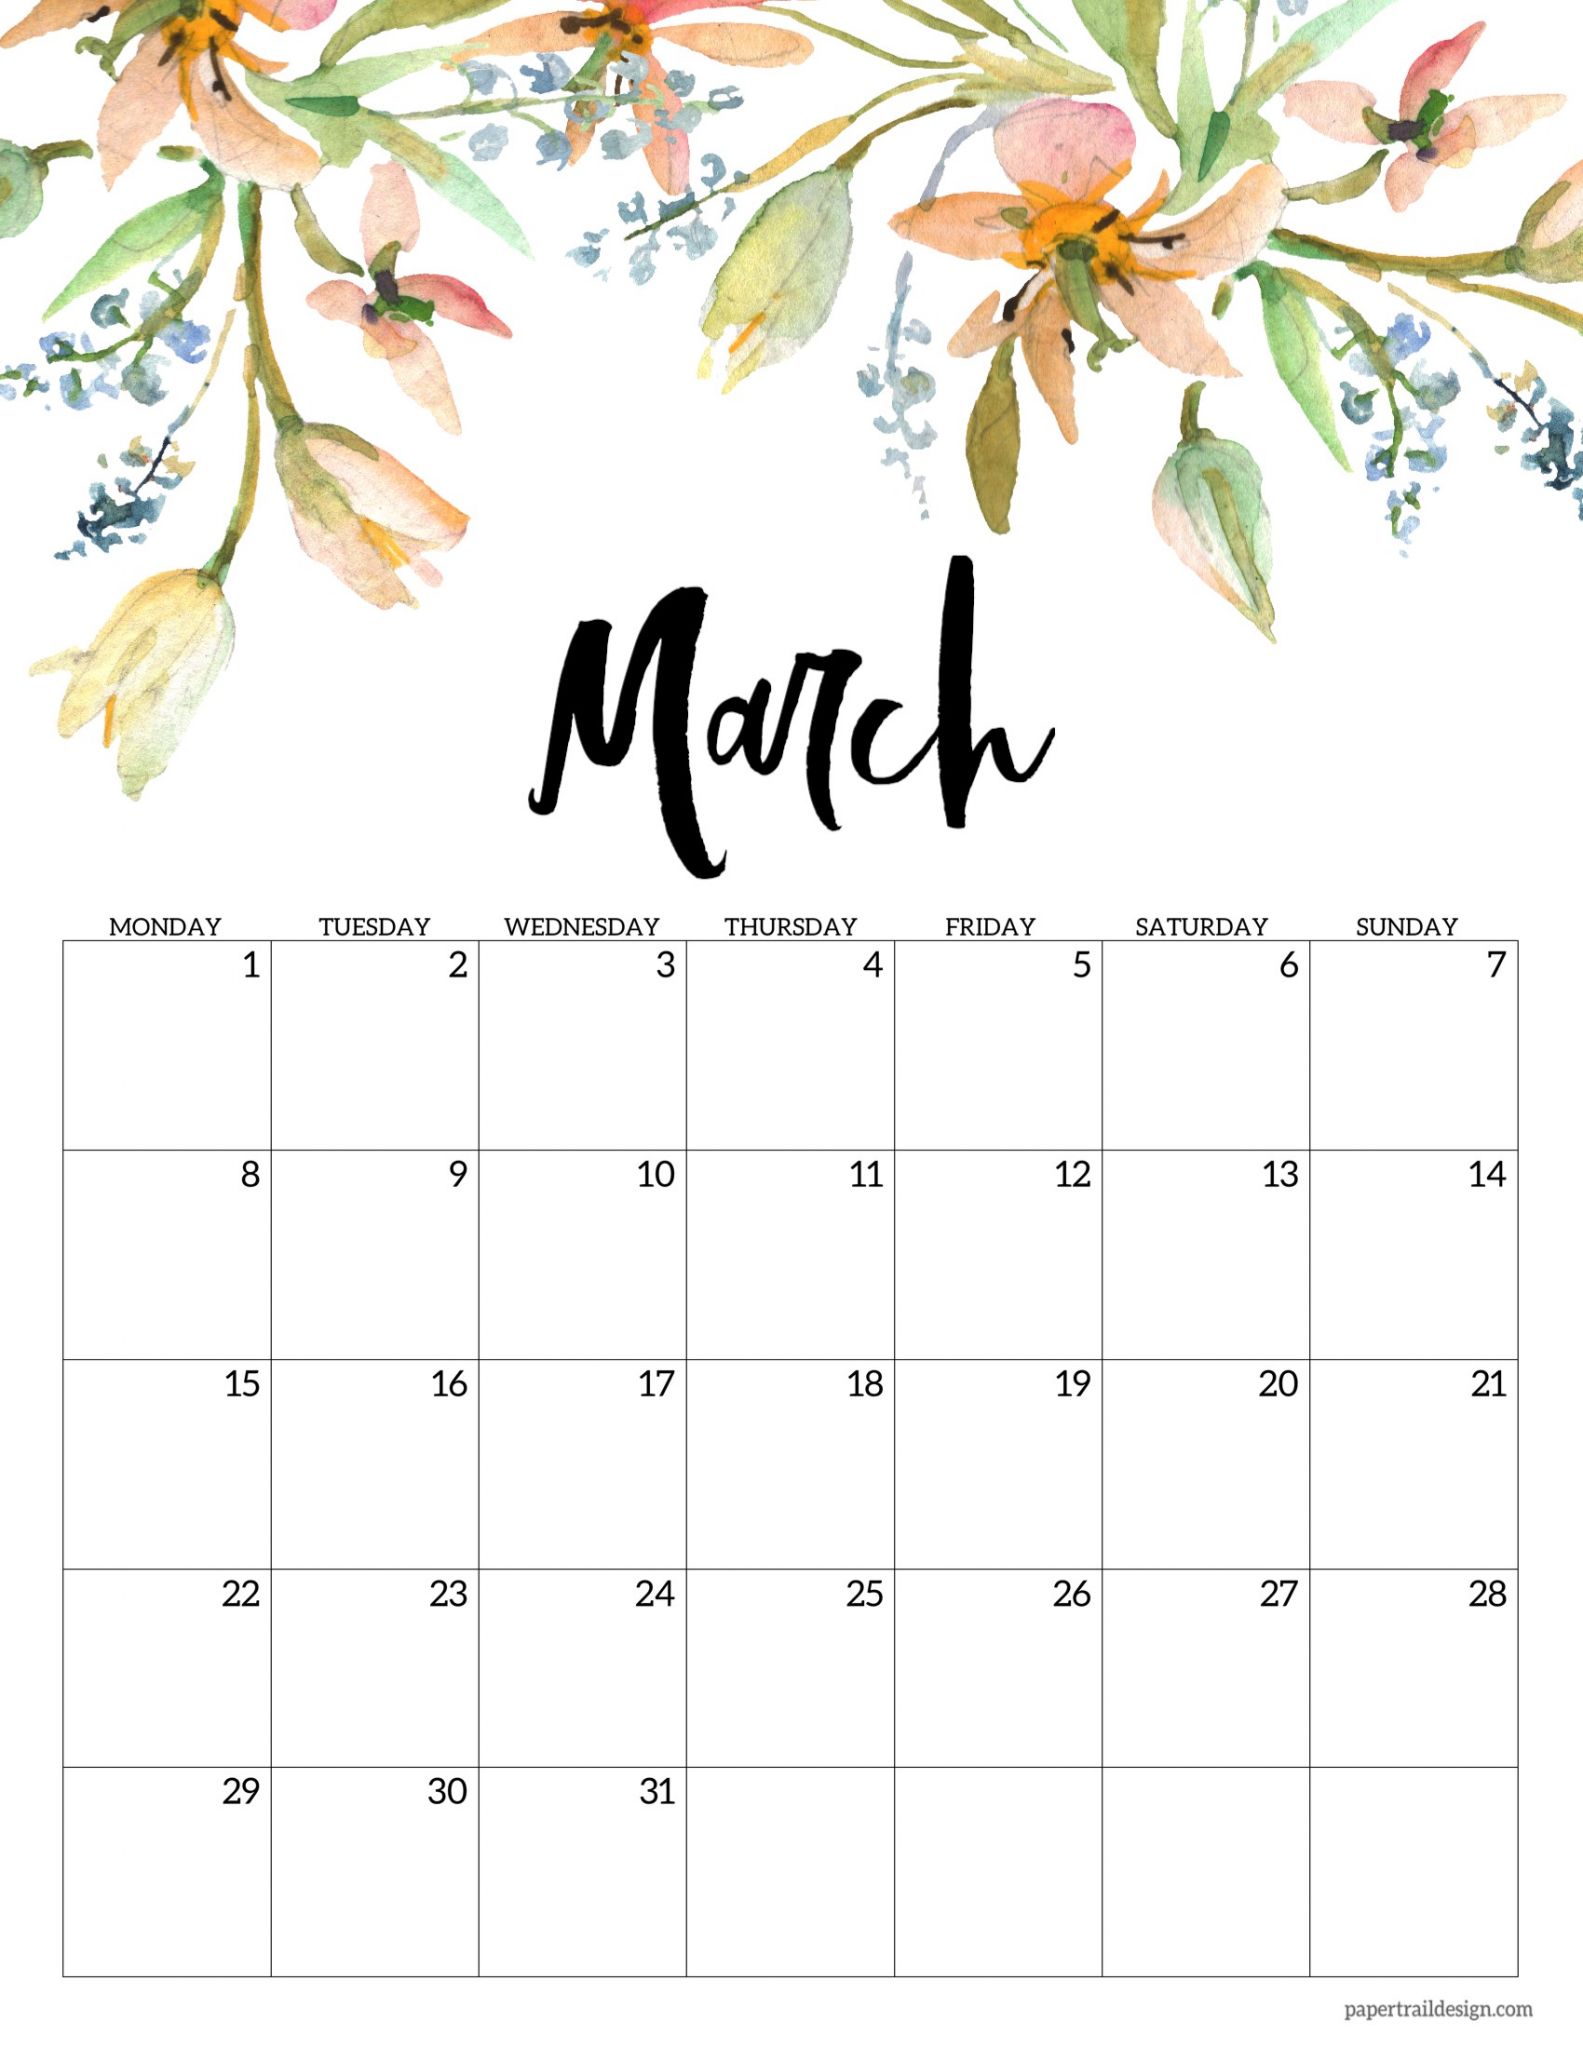 2021 floral calendar monday start